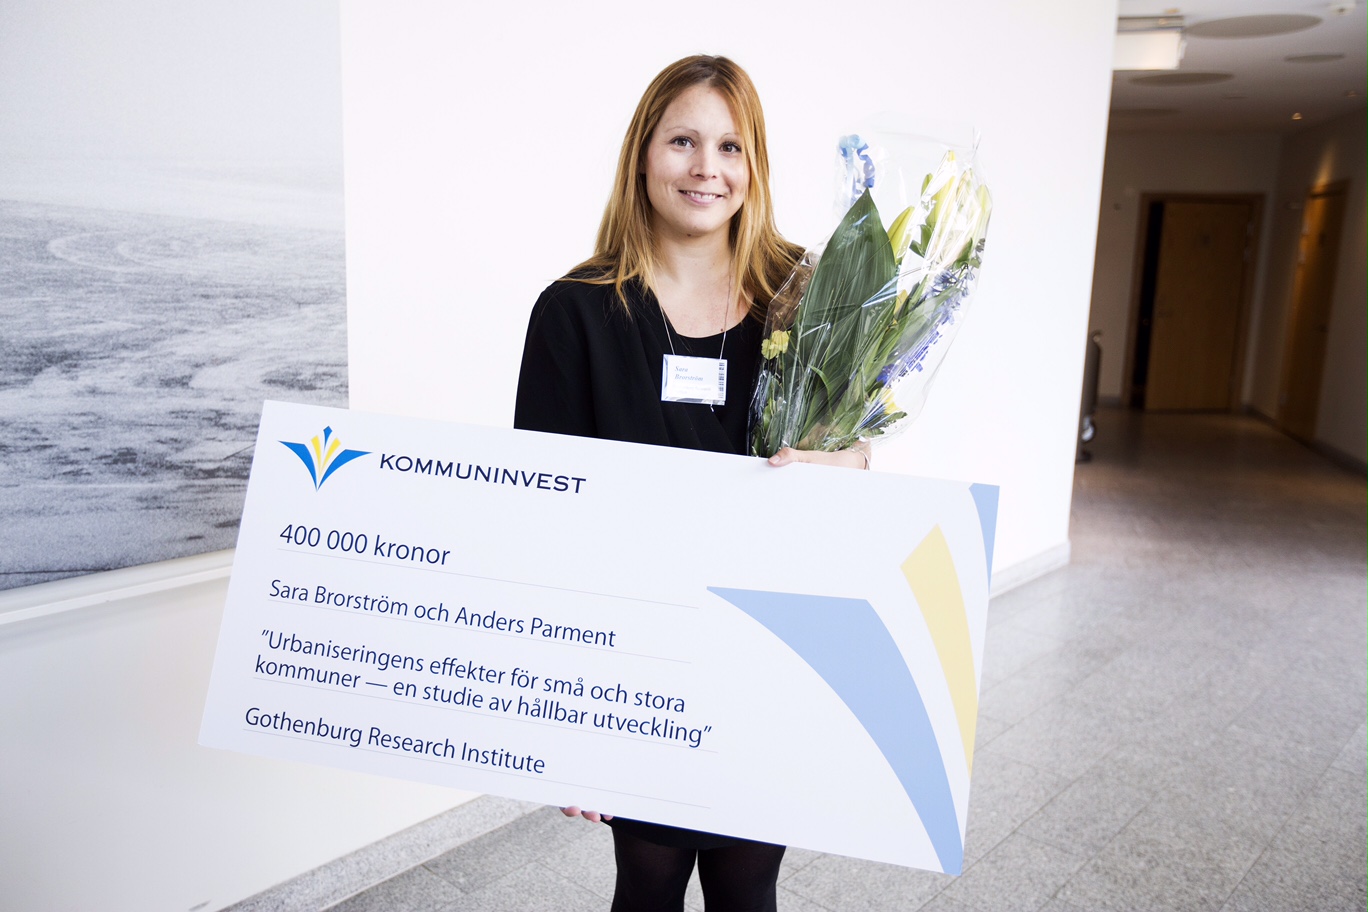 Sara Brorström får tillsammans med Anders Parment 400 000 kronor för att studera hur kommuner påverkas av urbanisering.